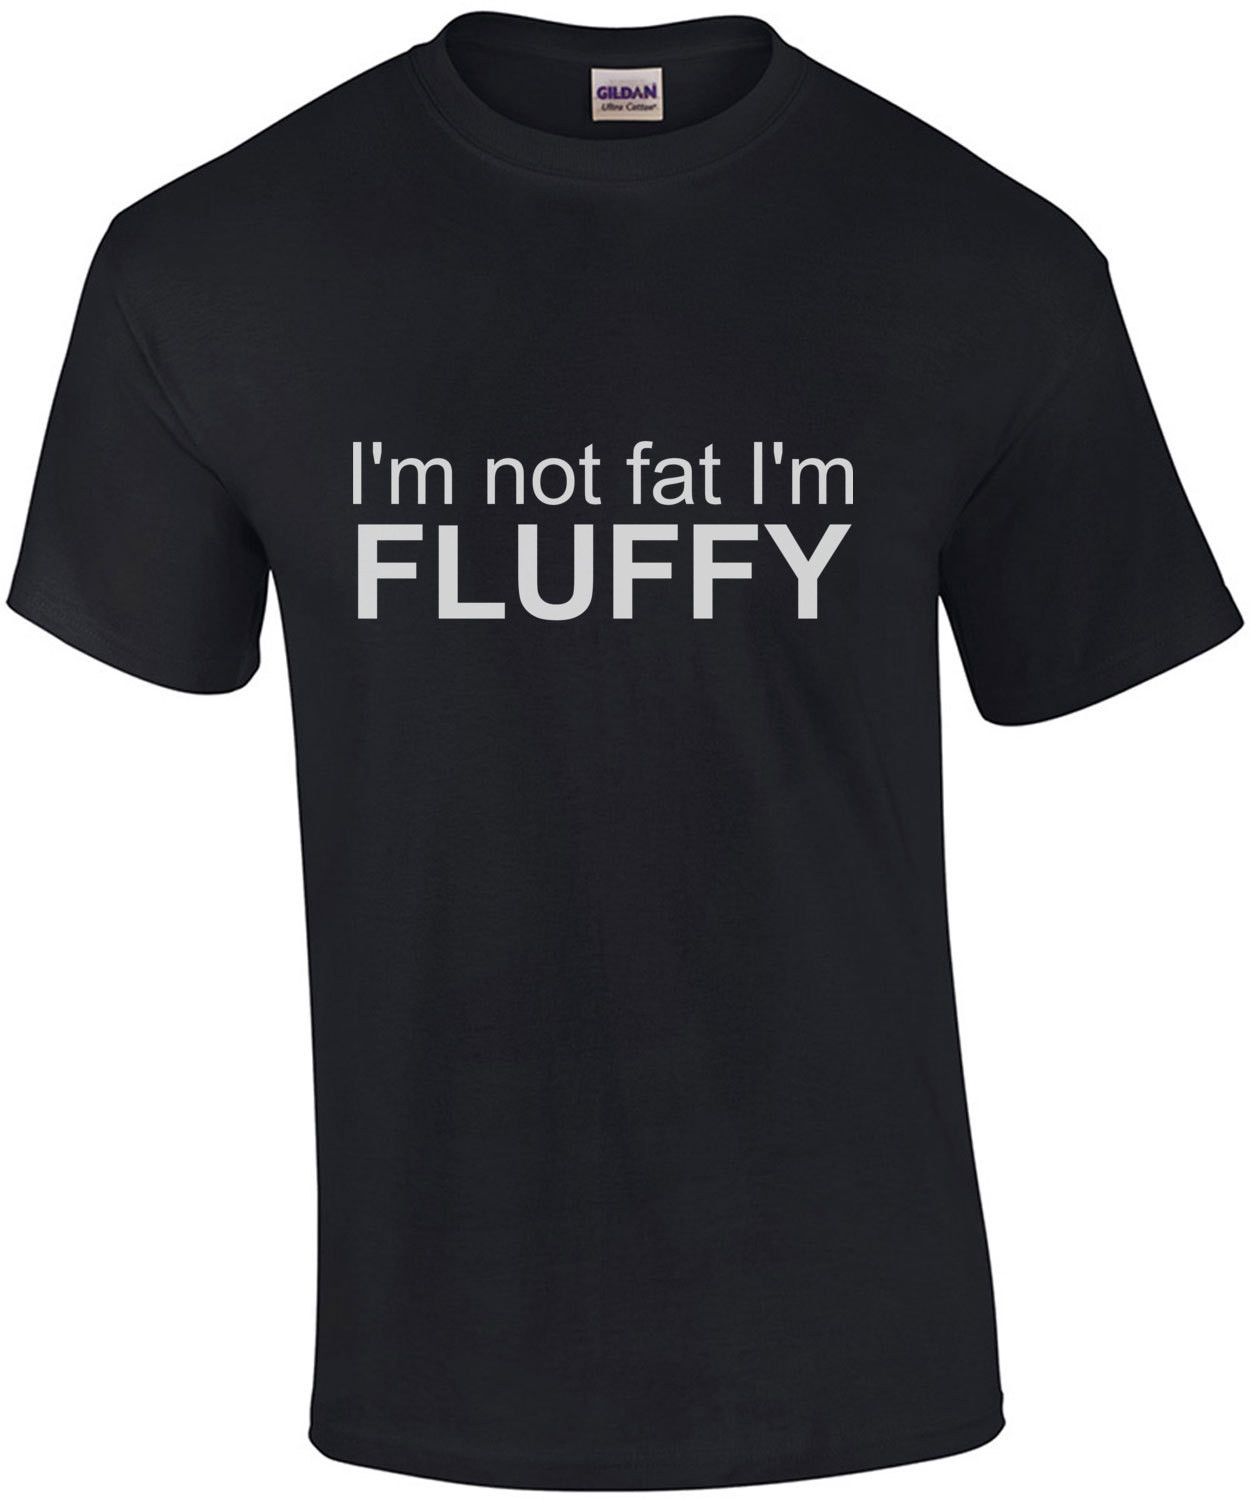 I'm not fat I'm fluffy - fat t-shirt